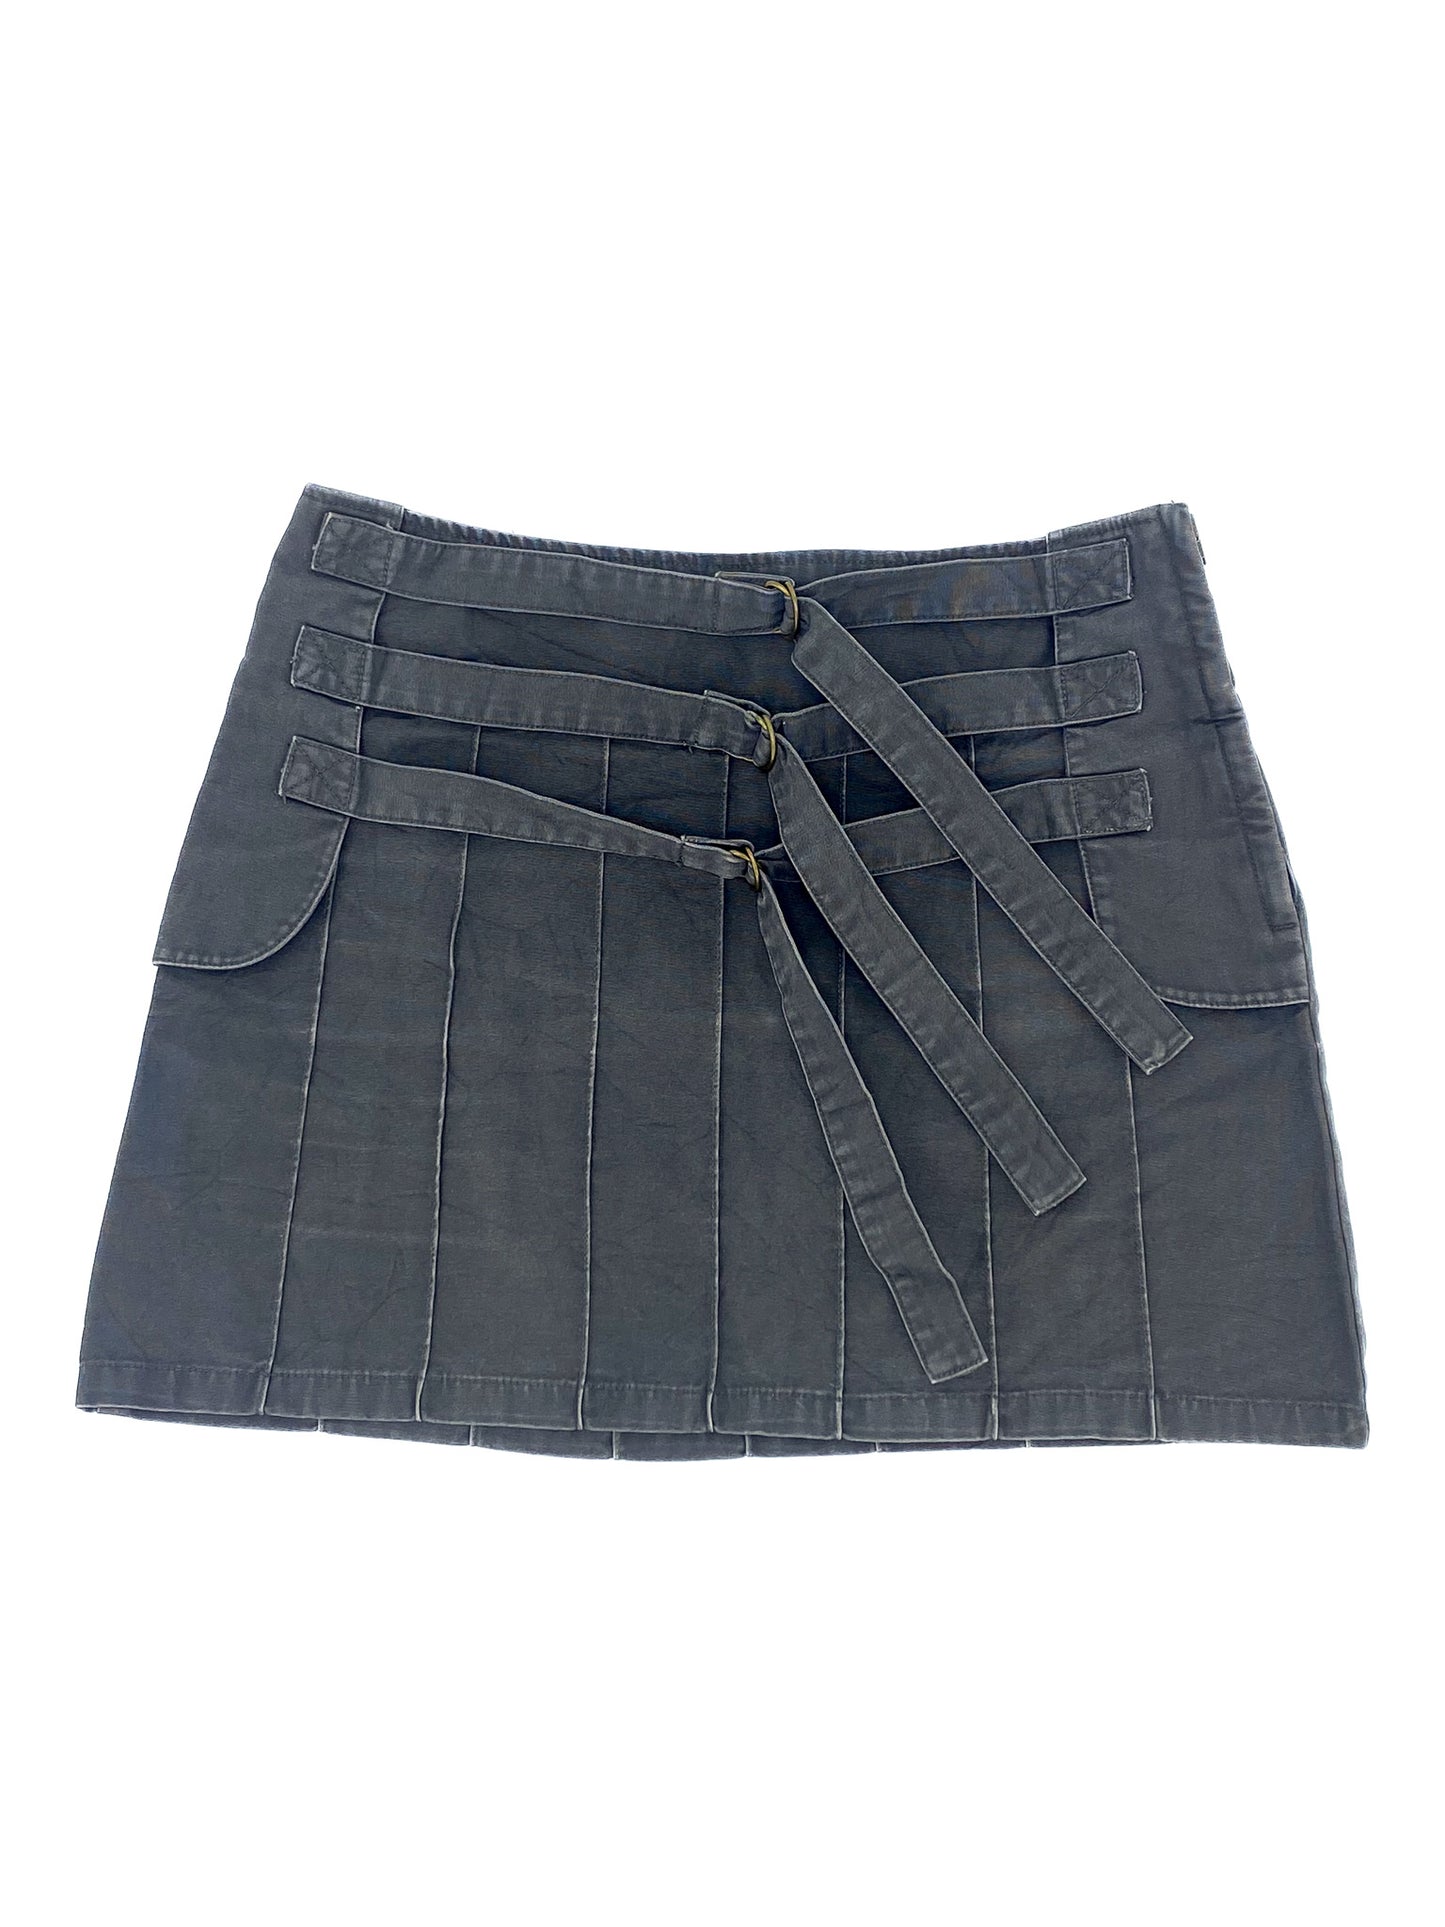 Vintage Multi-Belted Skirt - M